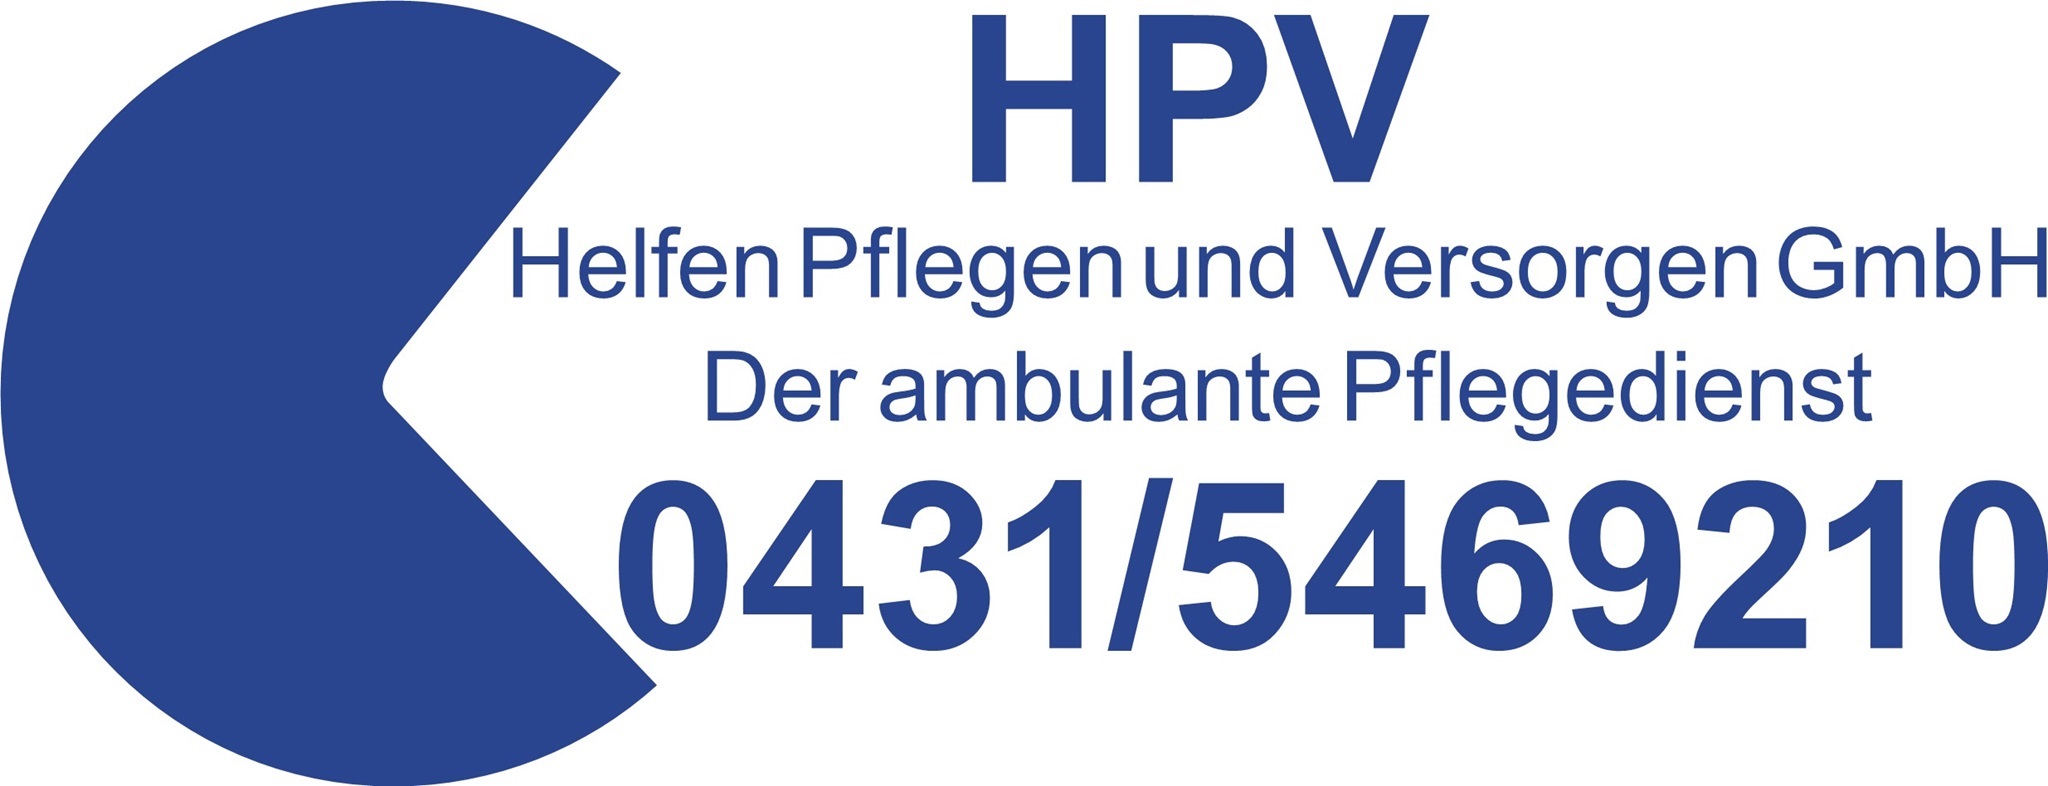 HPV-Logo